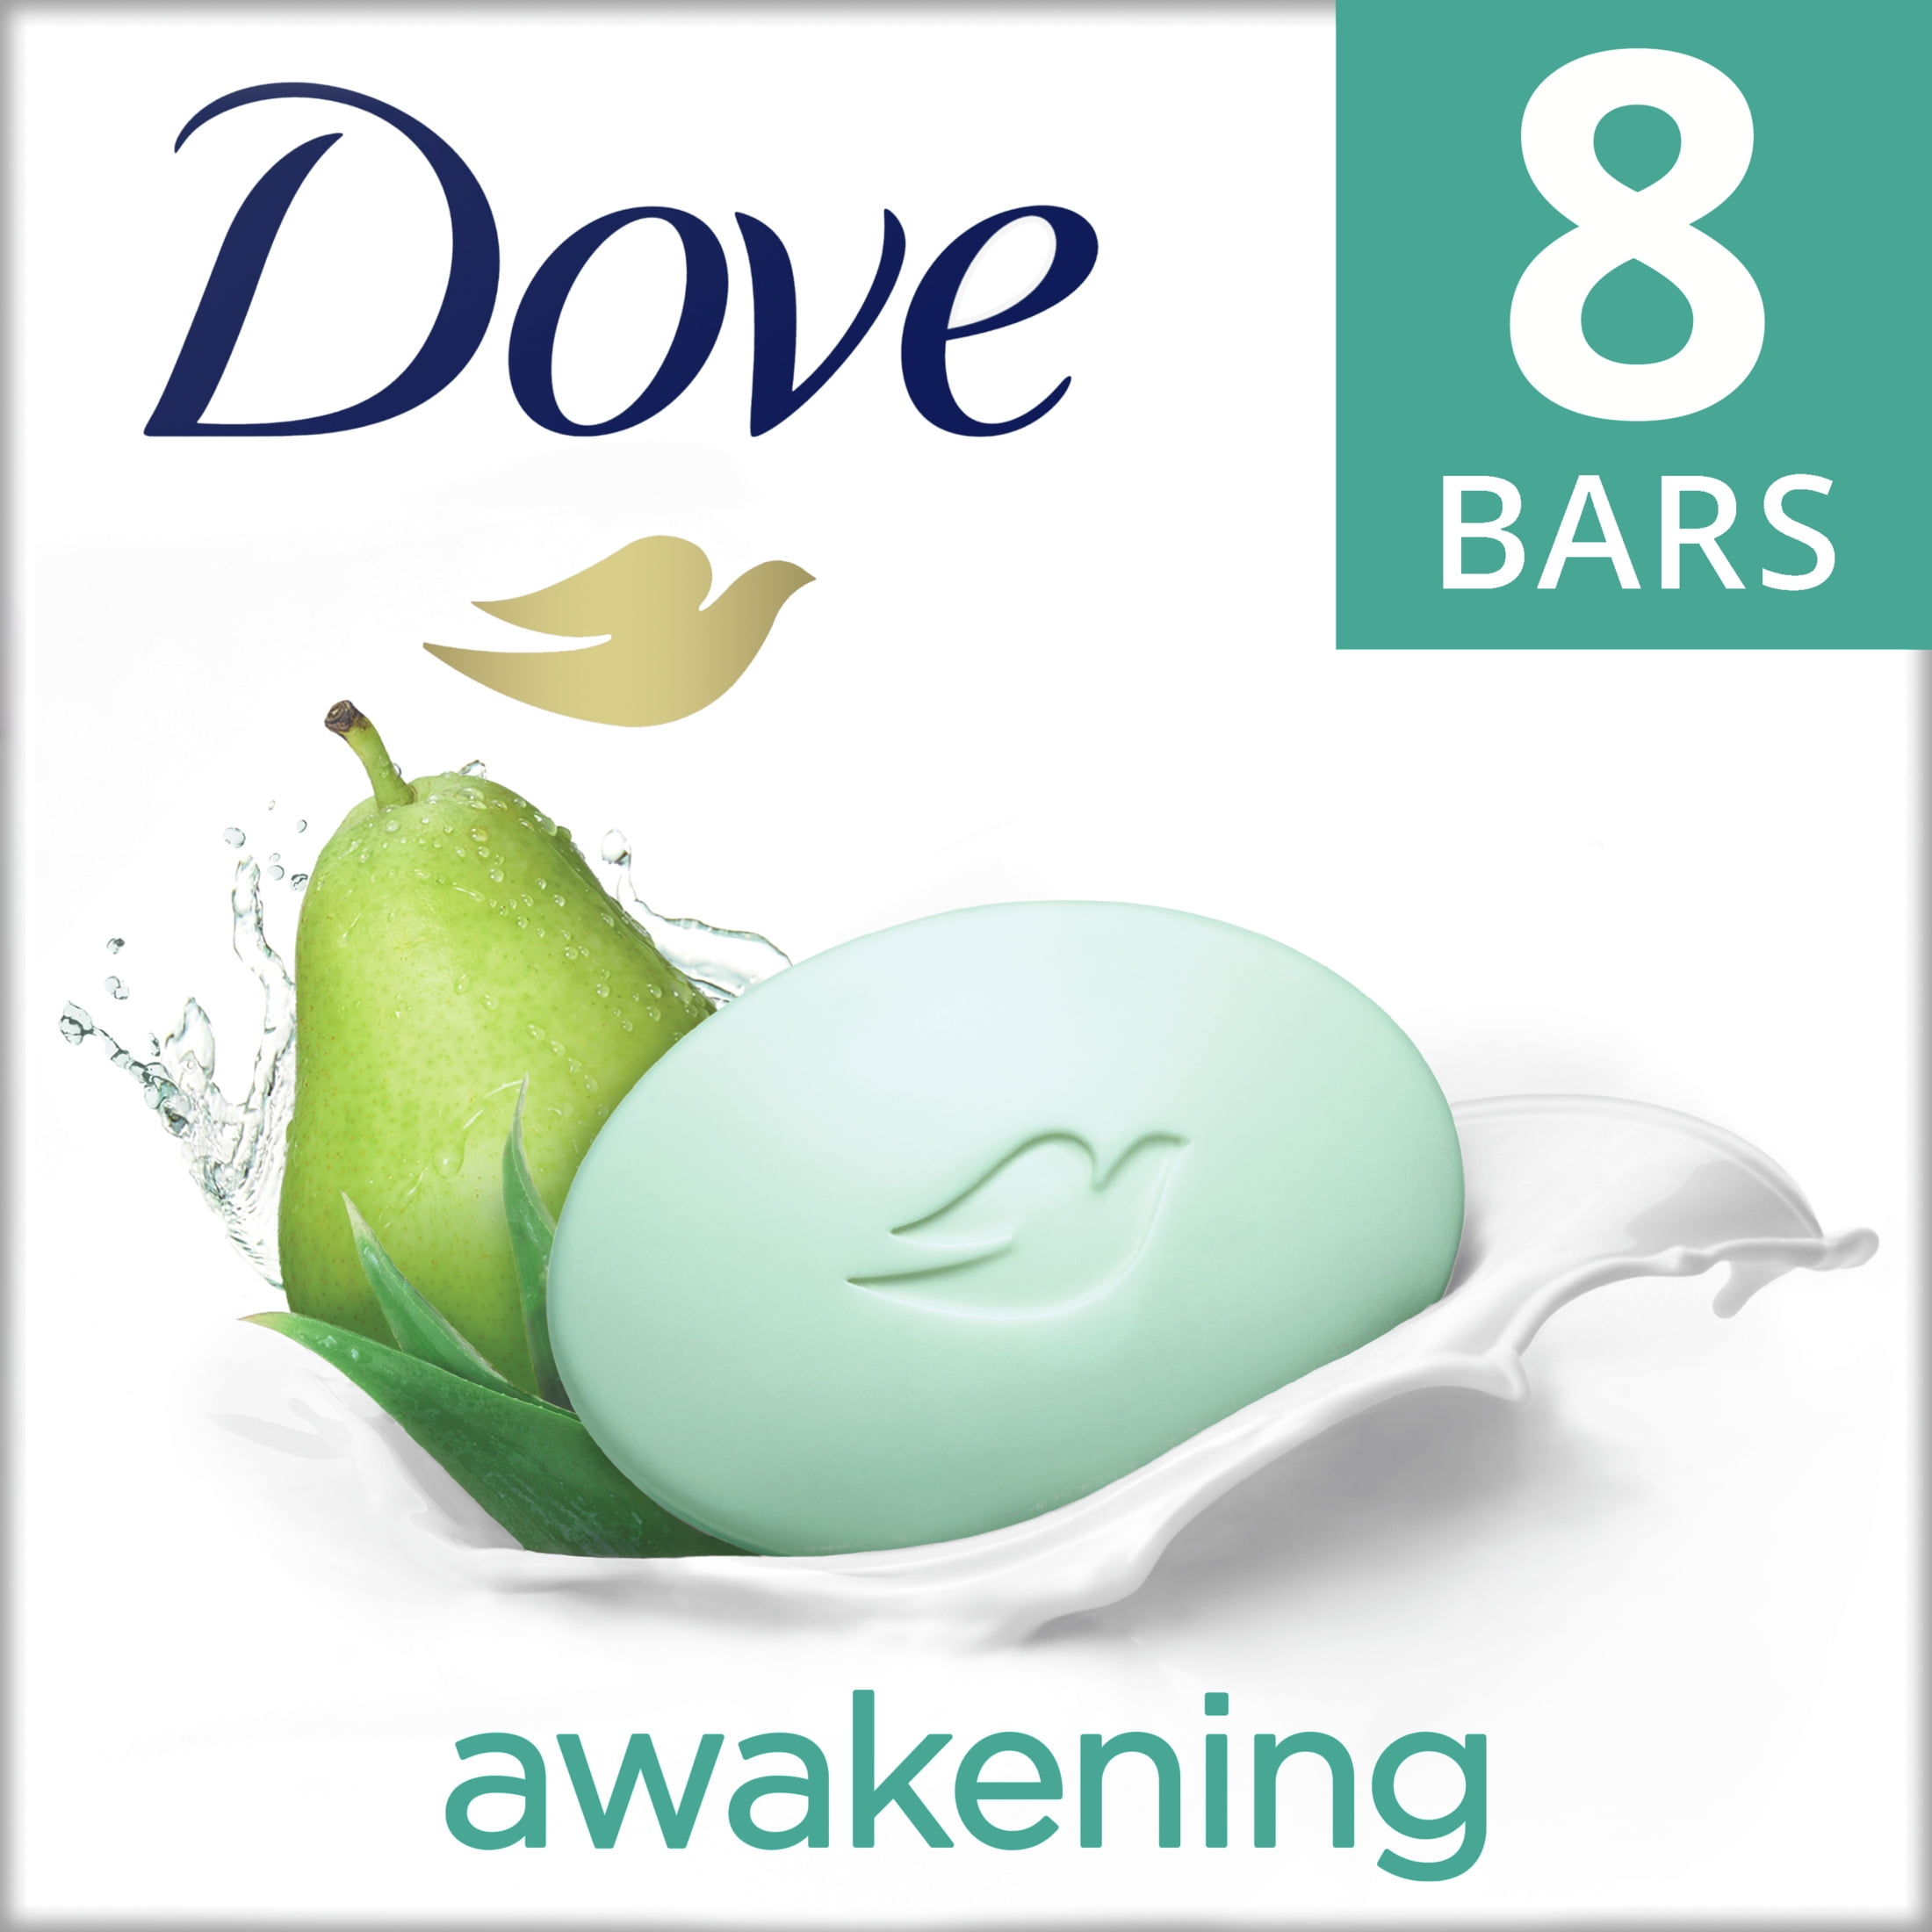 Dove Beauty Bar Gentle Skin Cleanser Awakening More Moisturizing Than Bar Soap Moisturizing for Gentle Soft Skin Care 3.75 oz, 8 Bars